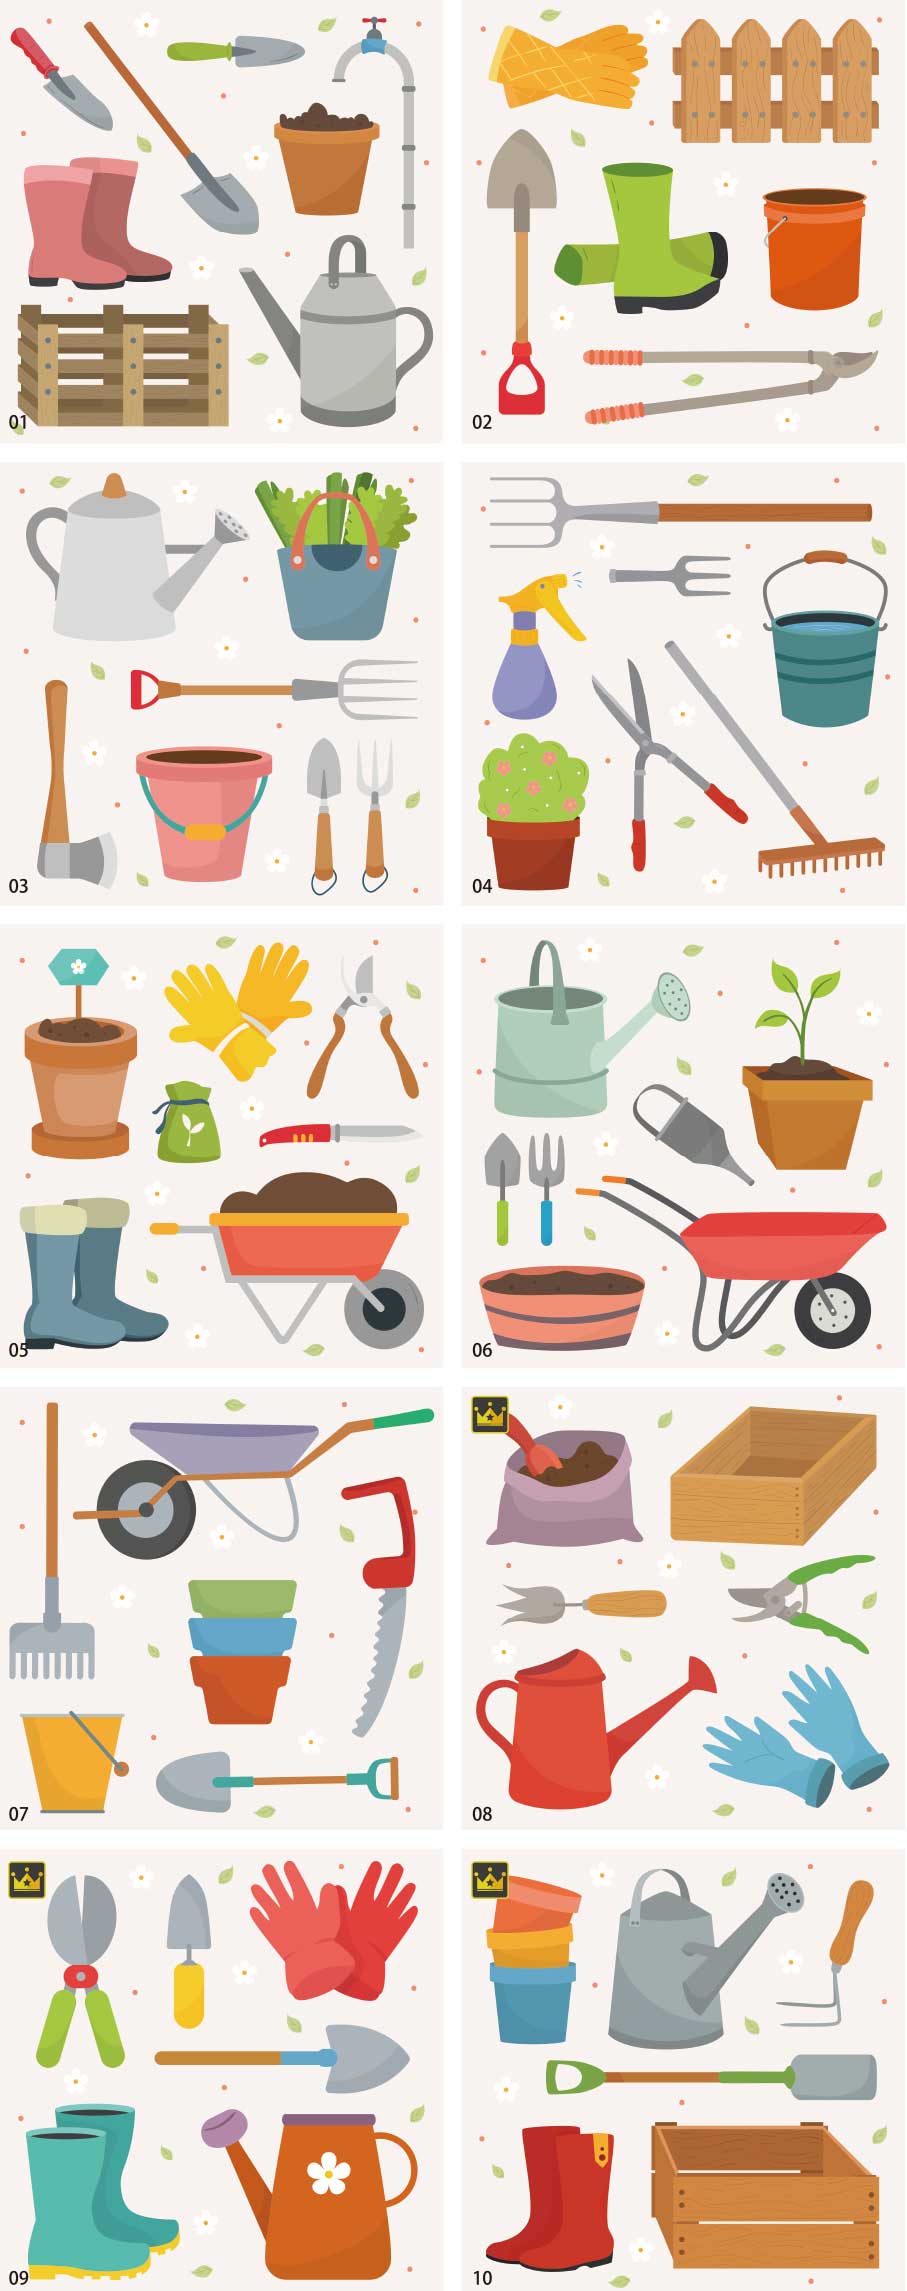 Bộ sưu tập minh họa công cụ làm vườn